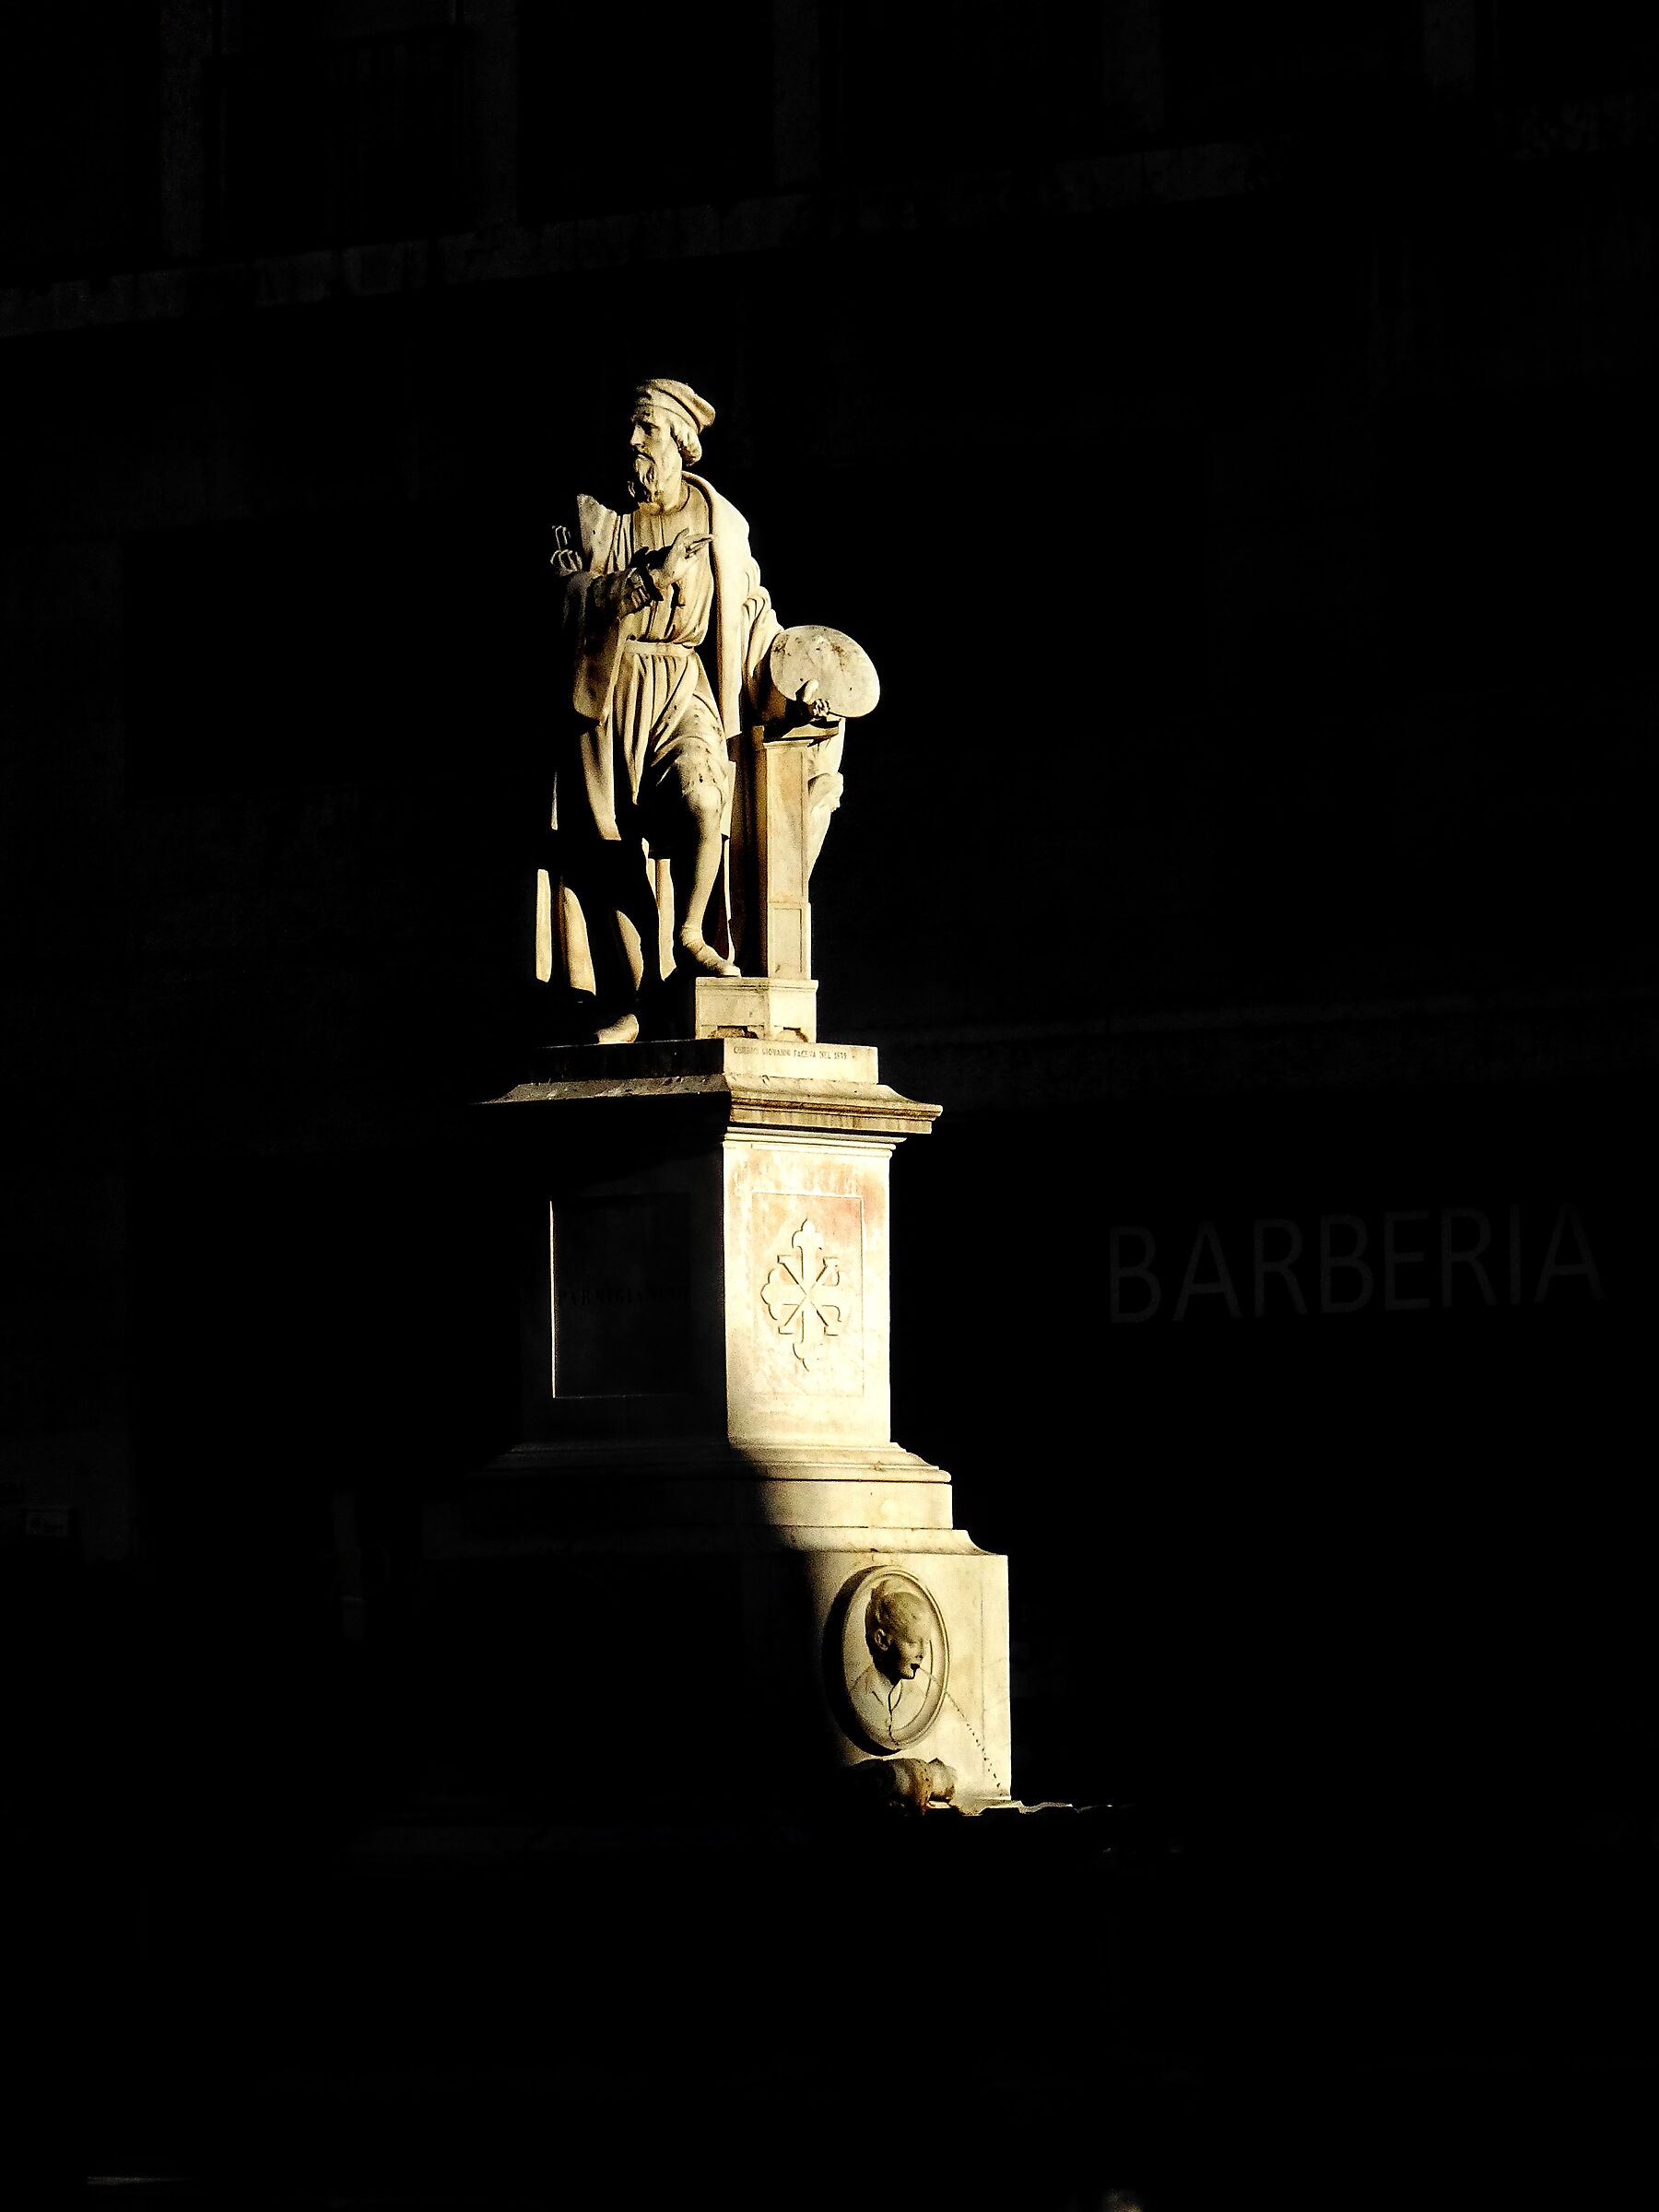 Garibaldi in the Dark ...